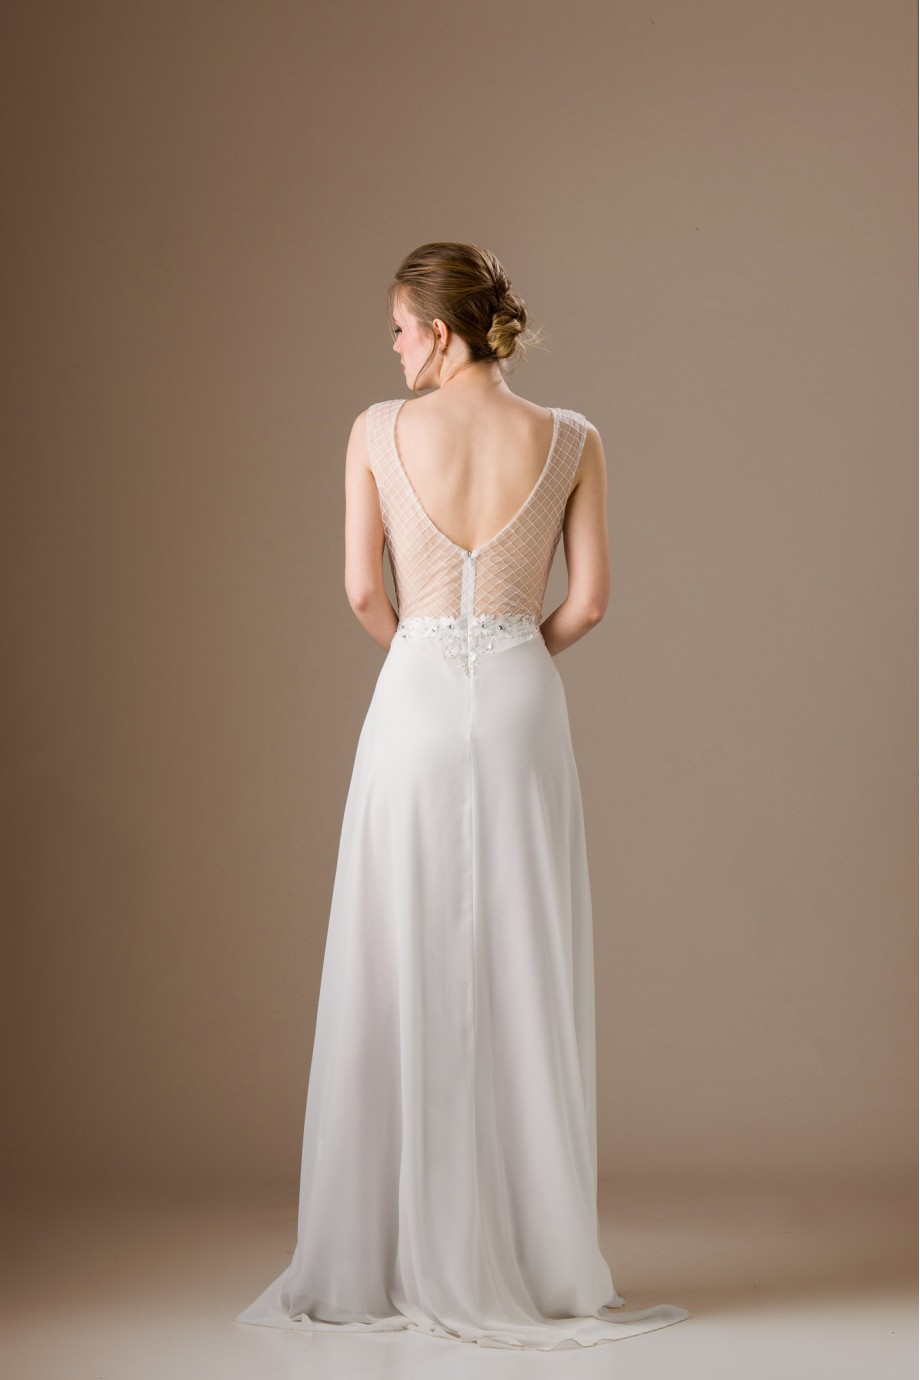 Μακρύ λευκό νυφικό φόρεμα